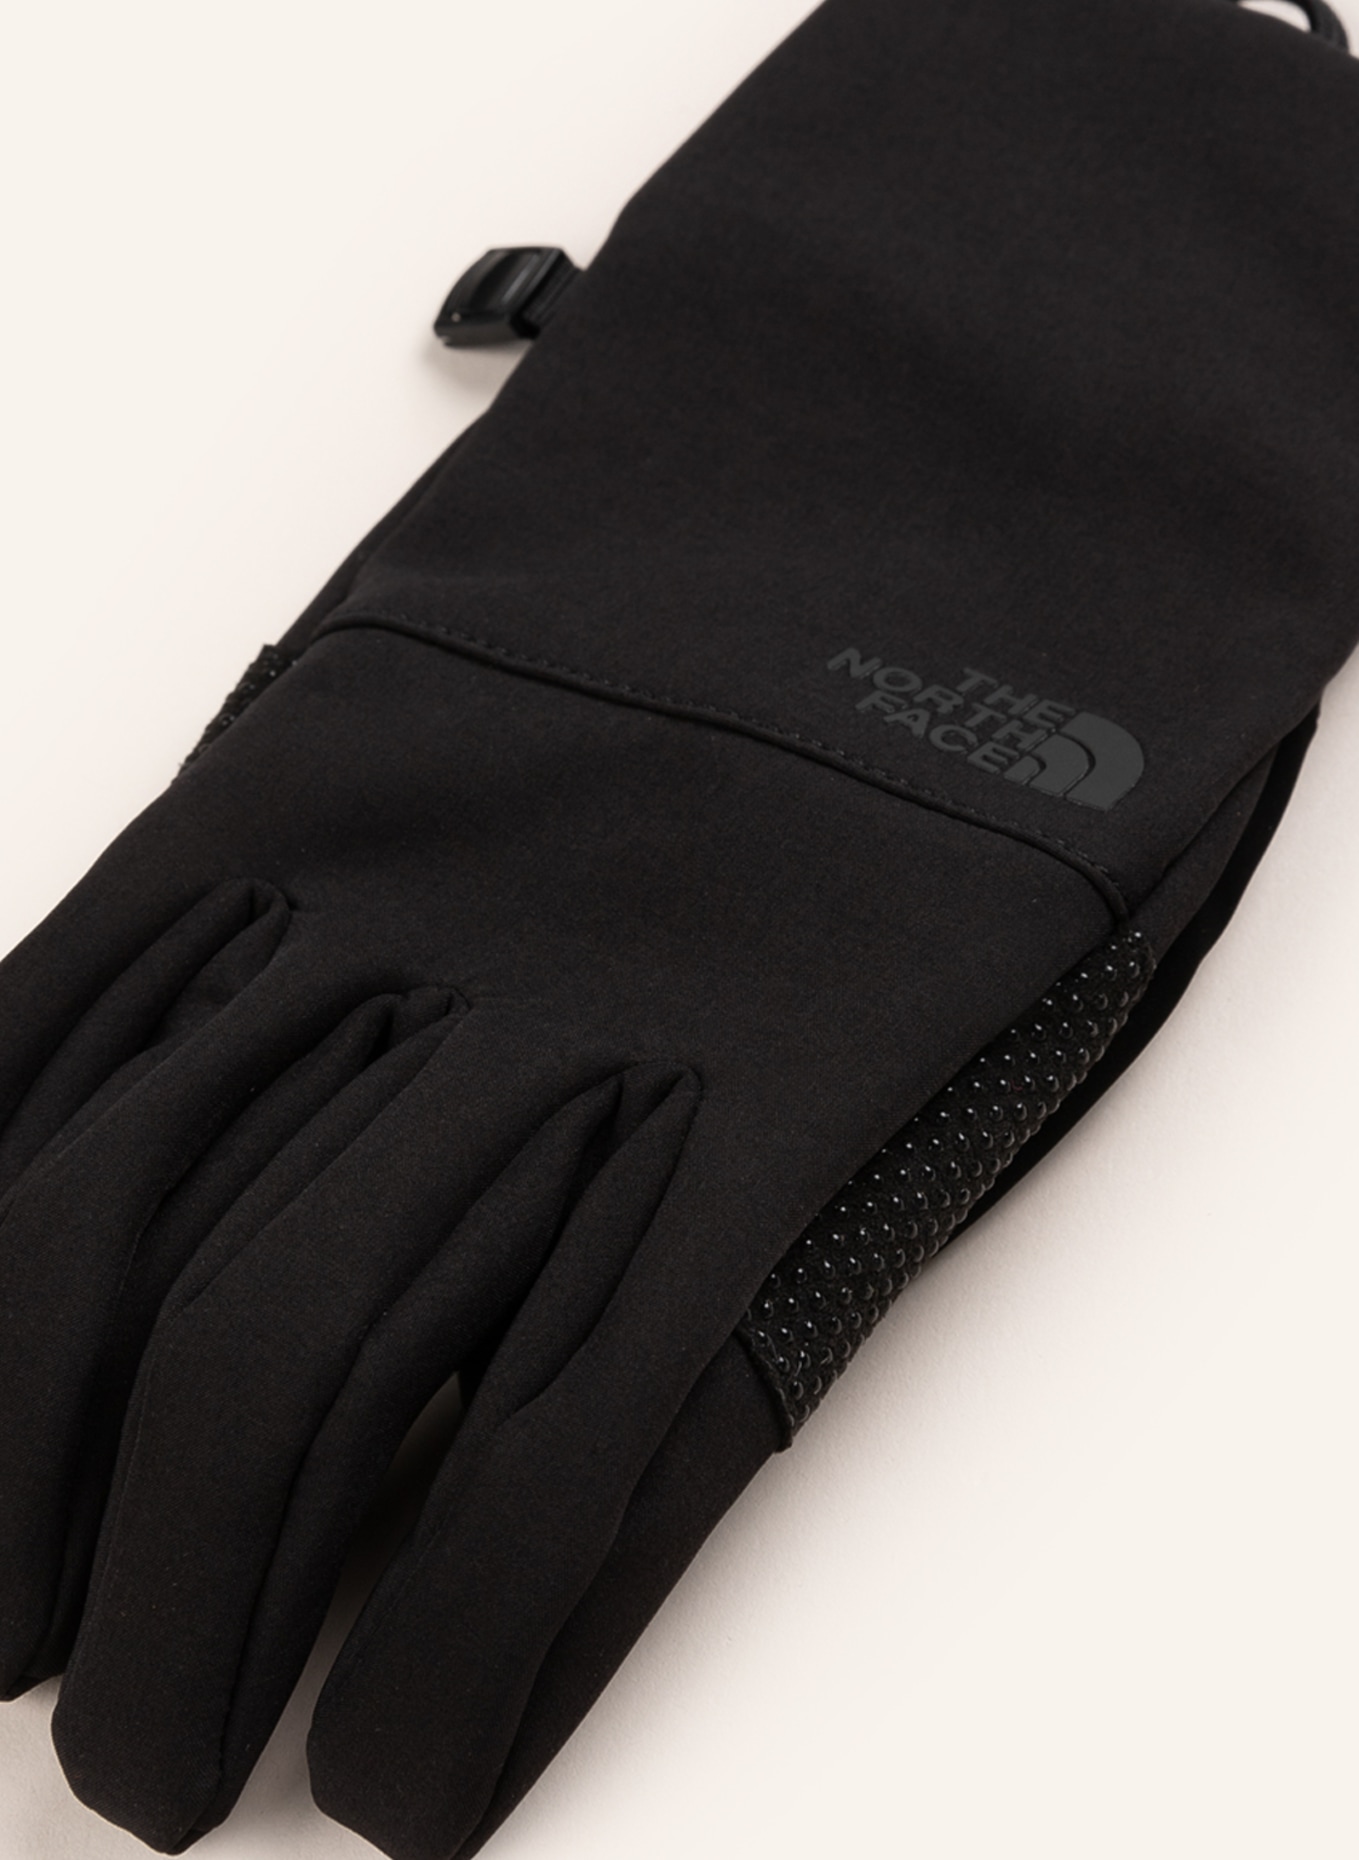 THE NORTH FACE Multisport-Handschuhe APEX in mit Touchscreen-Funktion schwarz ETIP